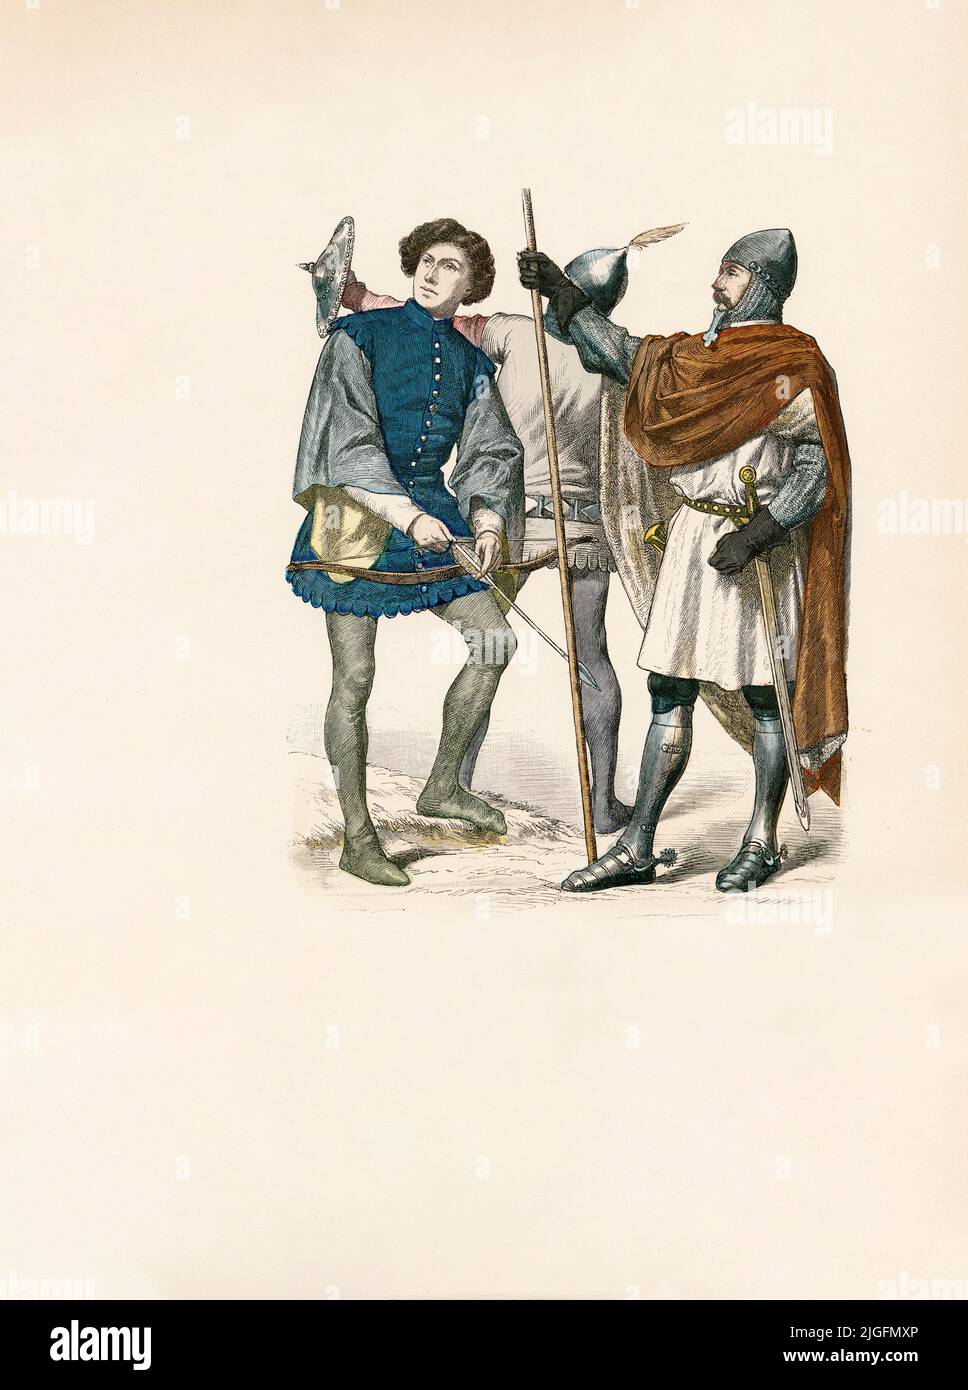 Soldats, Italie, deuxième moitié du 14th siècle, Illustration, l'Histoire du Costume, Braun & Schneider, Munich, Allemagne, 1861-1880 Banque D'Images